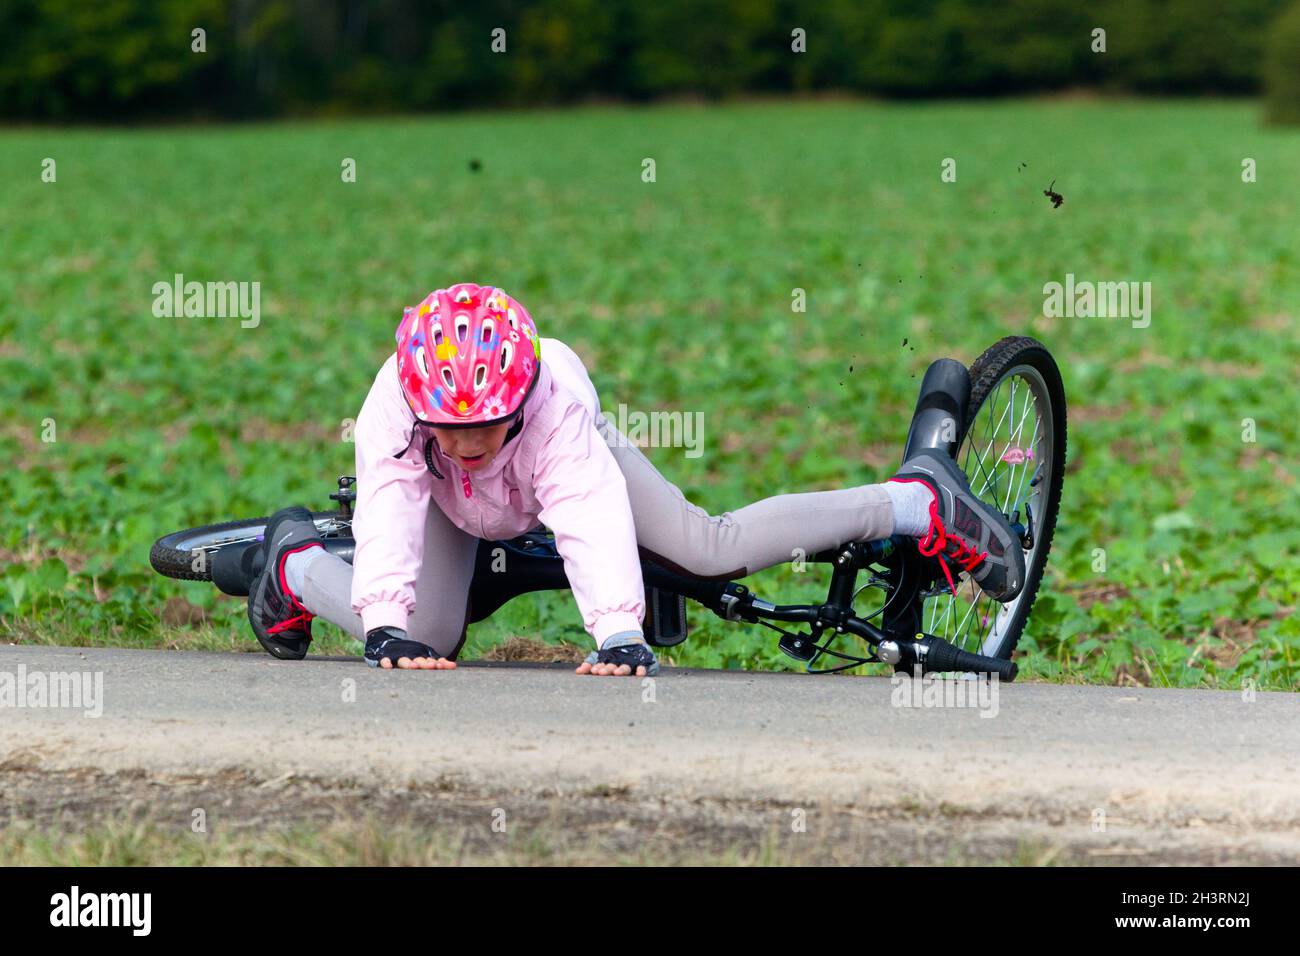 Un enfant tombe du vélo, un enfant avec un casque, un accident en plein air Banque D'Images